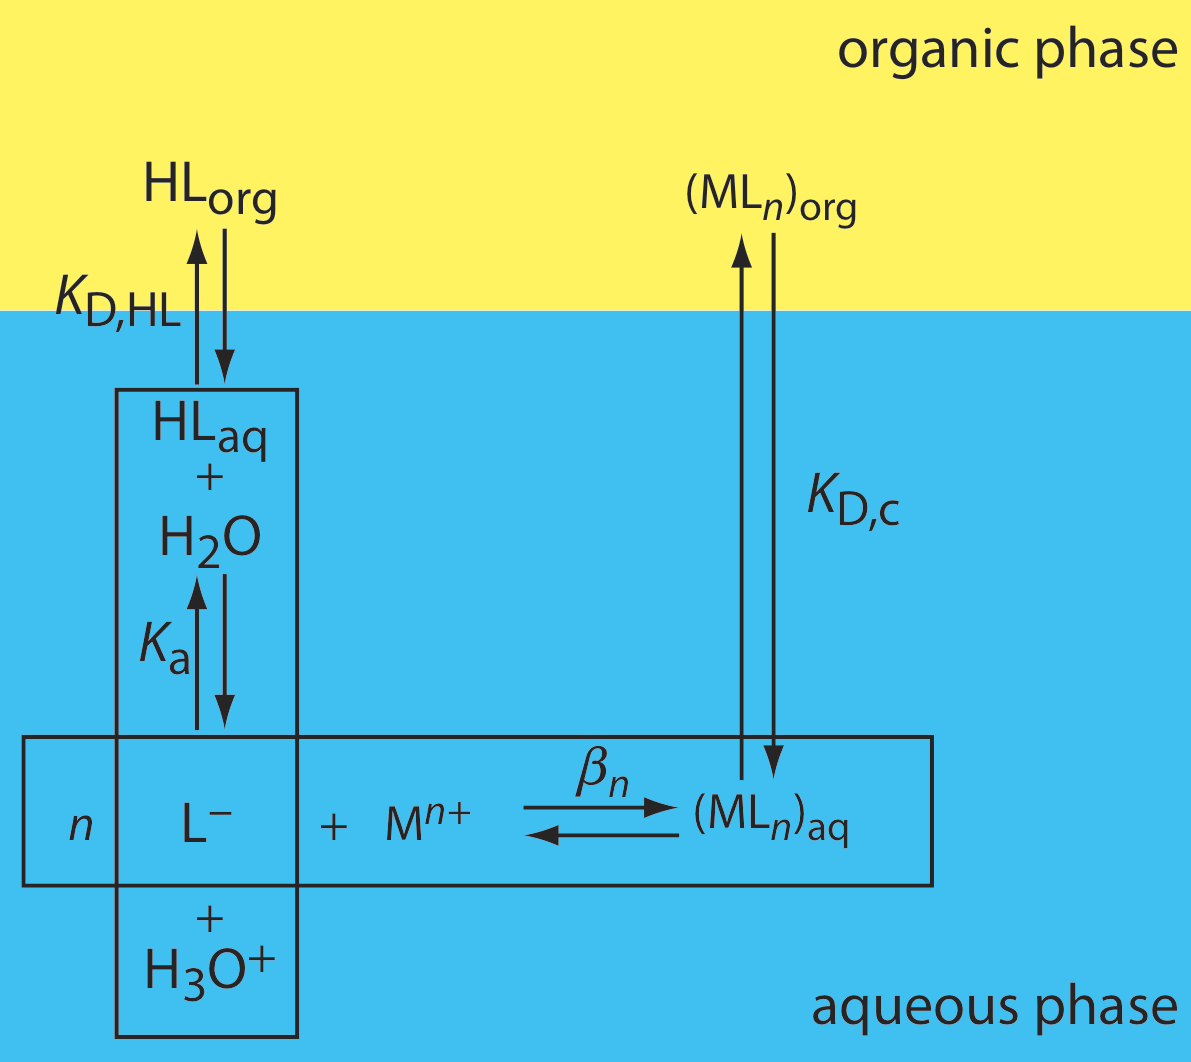 El esquema muestra cuatro reacciones sucediendo. Primero, el HL orgánico se convierte en HL acuoso. En la capa acuosa, HL reacciona con agua para crear L- y H3O+. L- luego reacciona con M (n+) para crear ML (n) acuosos. Finalmente, ML (n) se convierte a la fase orgánica.